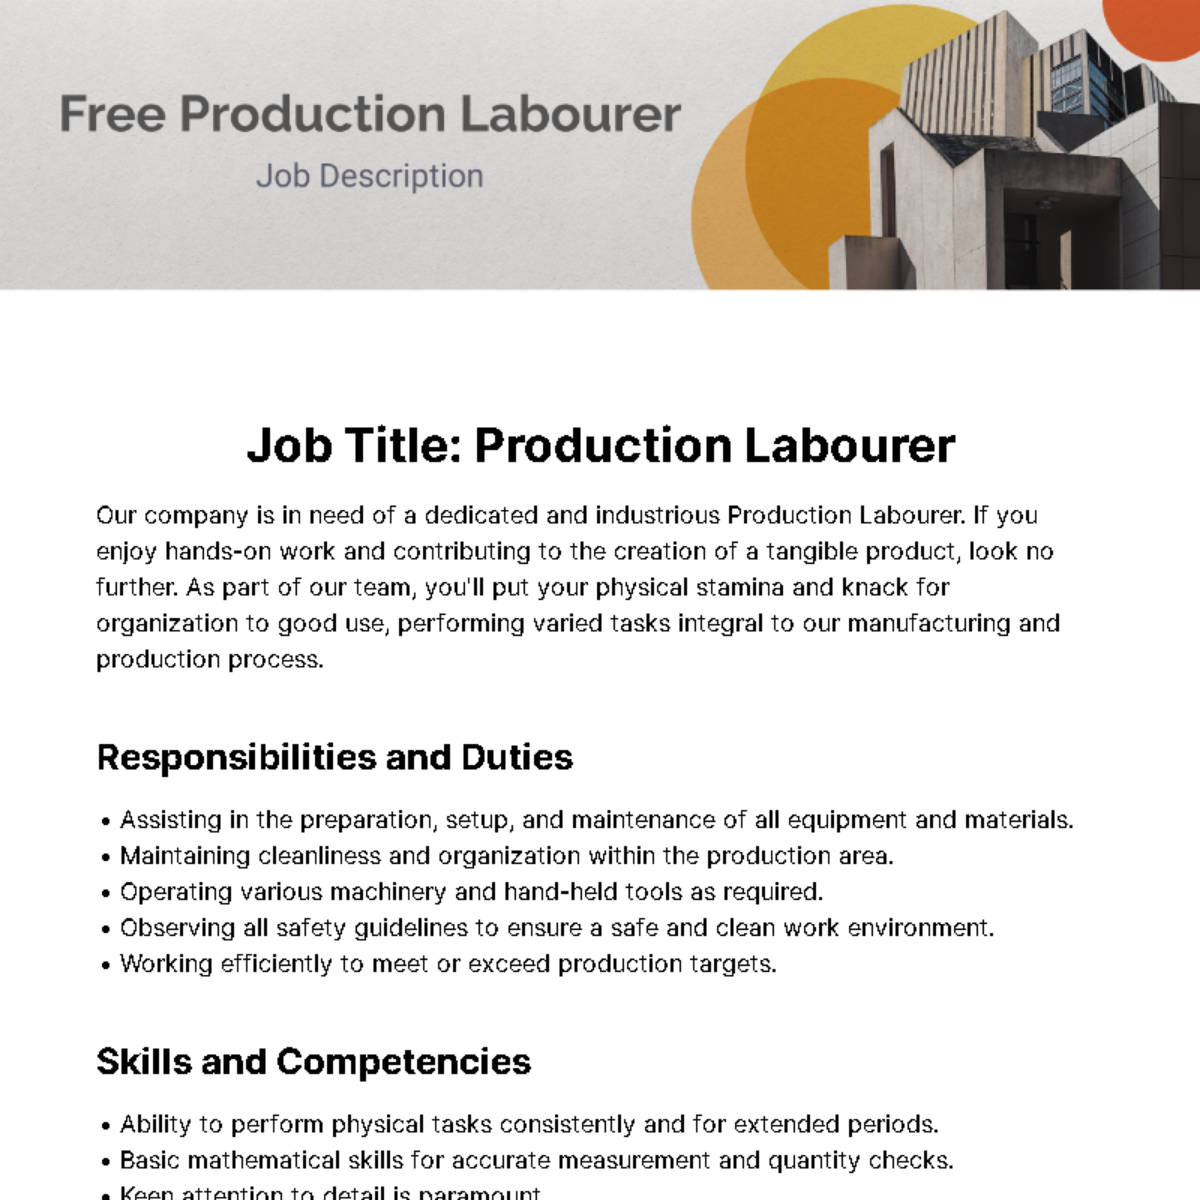 Free Production Labourer Job Description Template